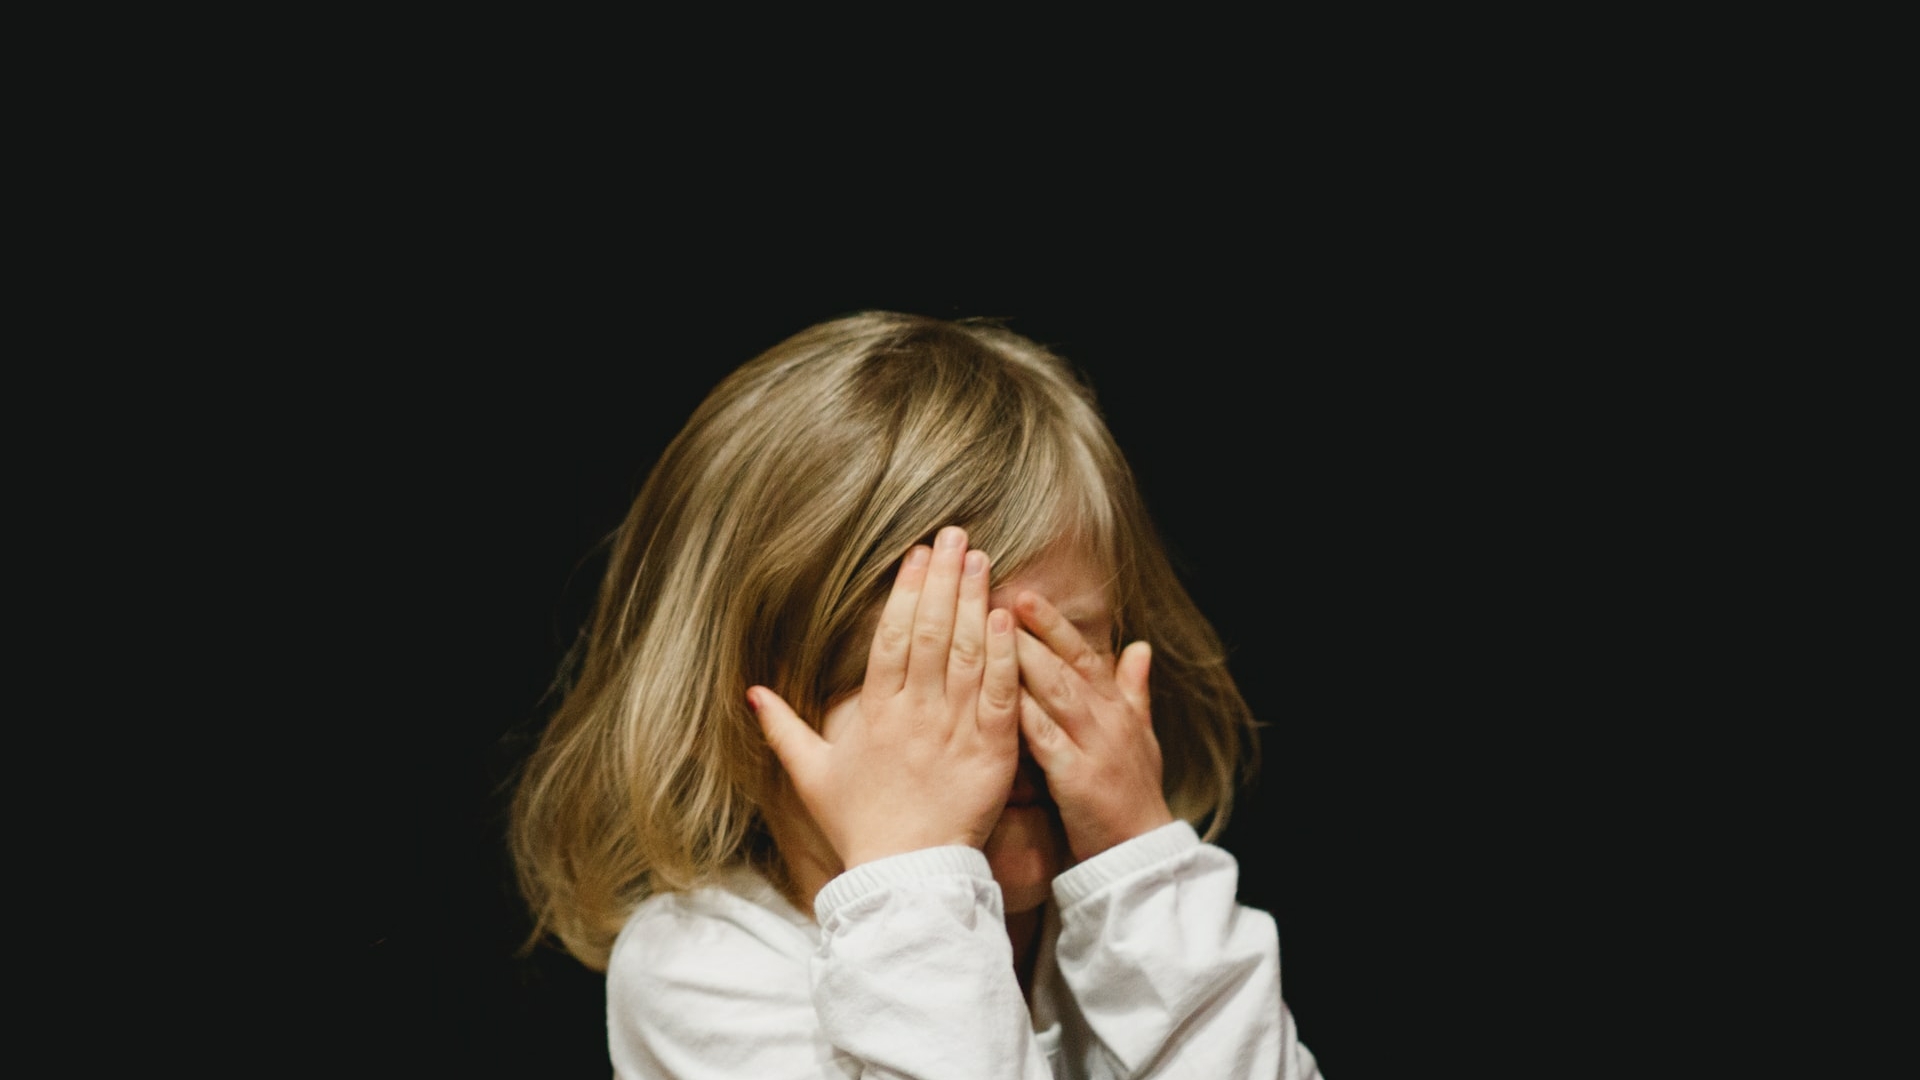 Нужна поддержка всех: психолог рассказала, как уберечь психику ребенка при разводе